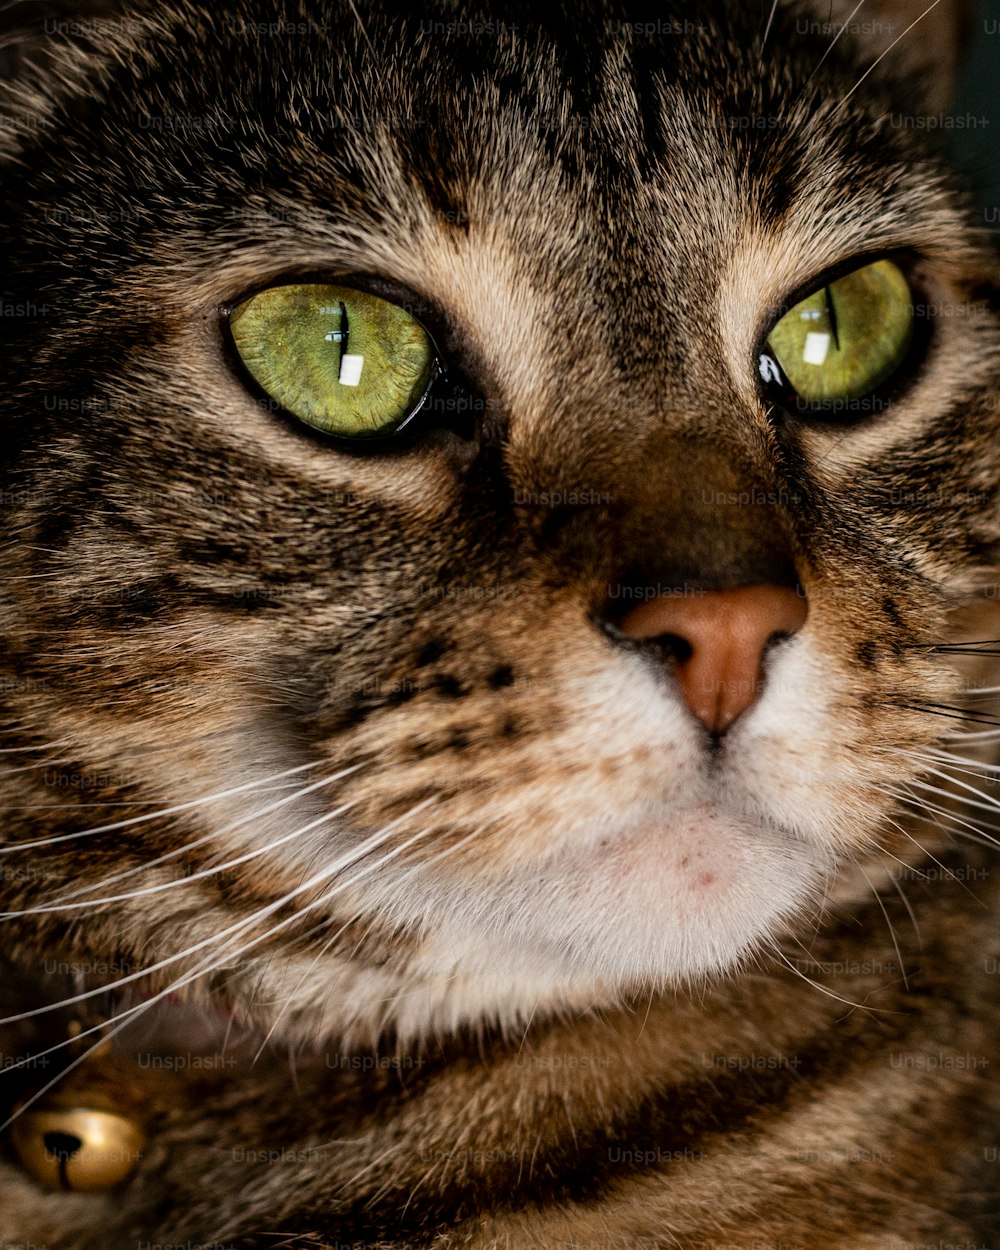 Un primo piano di un gatto con gli occhi verdi